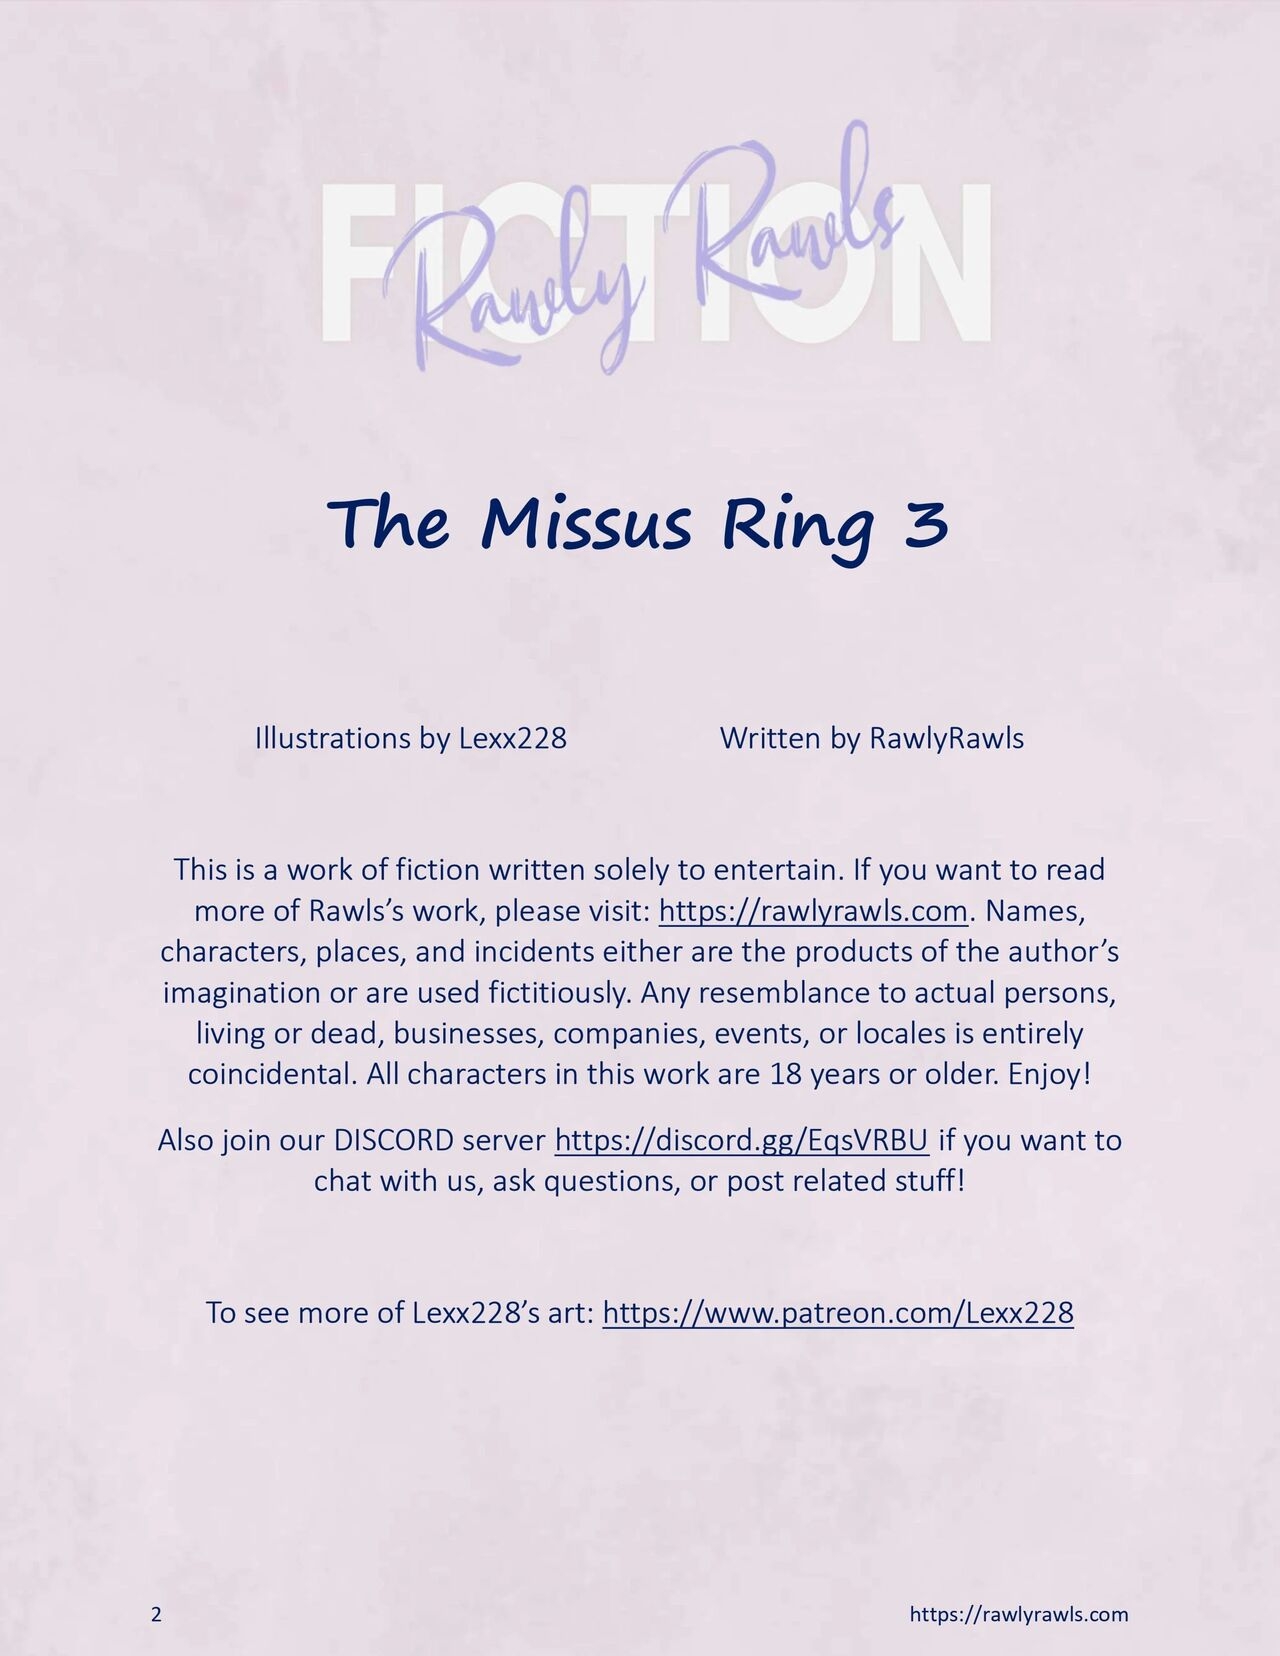 The Missus Ring [Lexx228 , RawlyRawls] - 3 - english 1